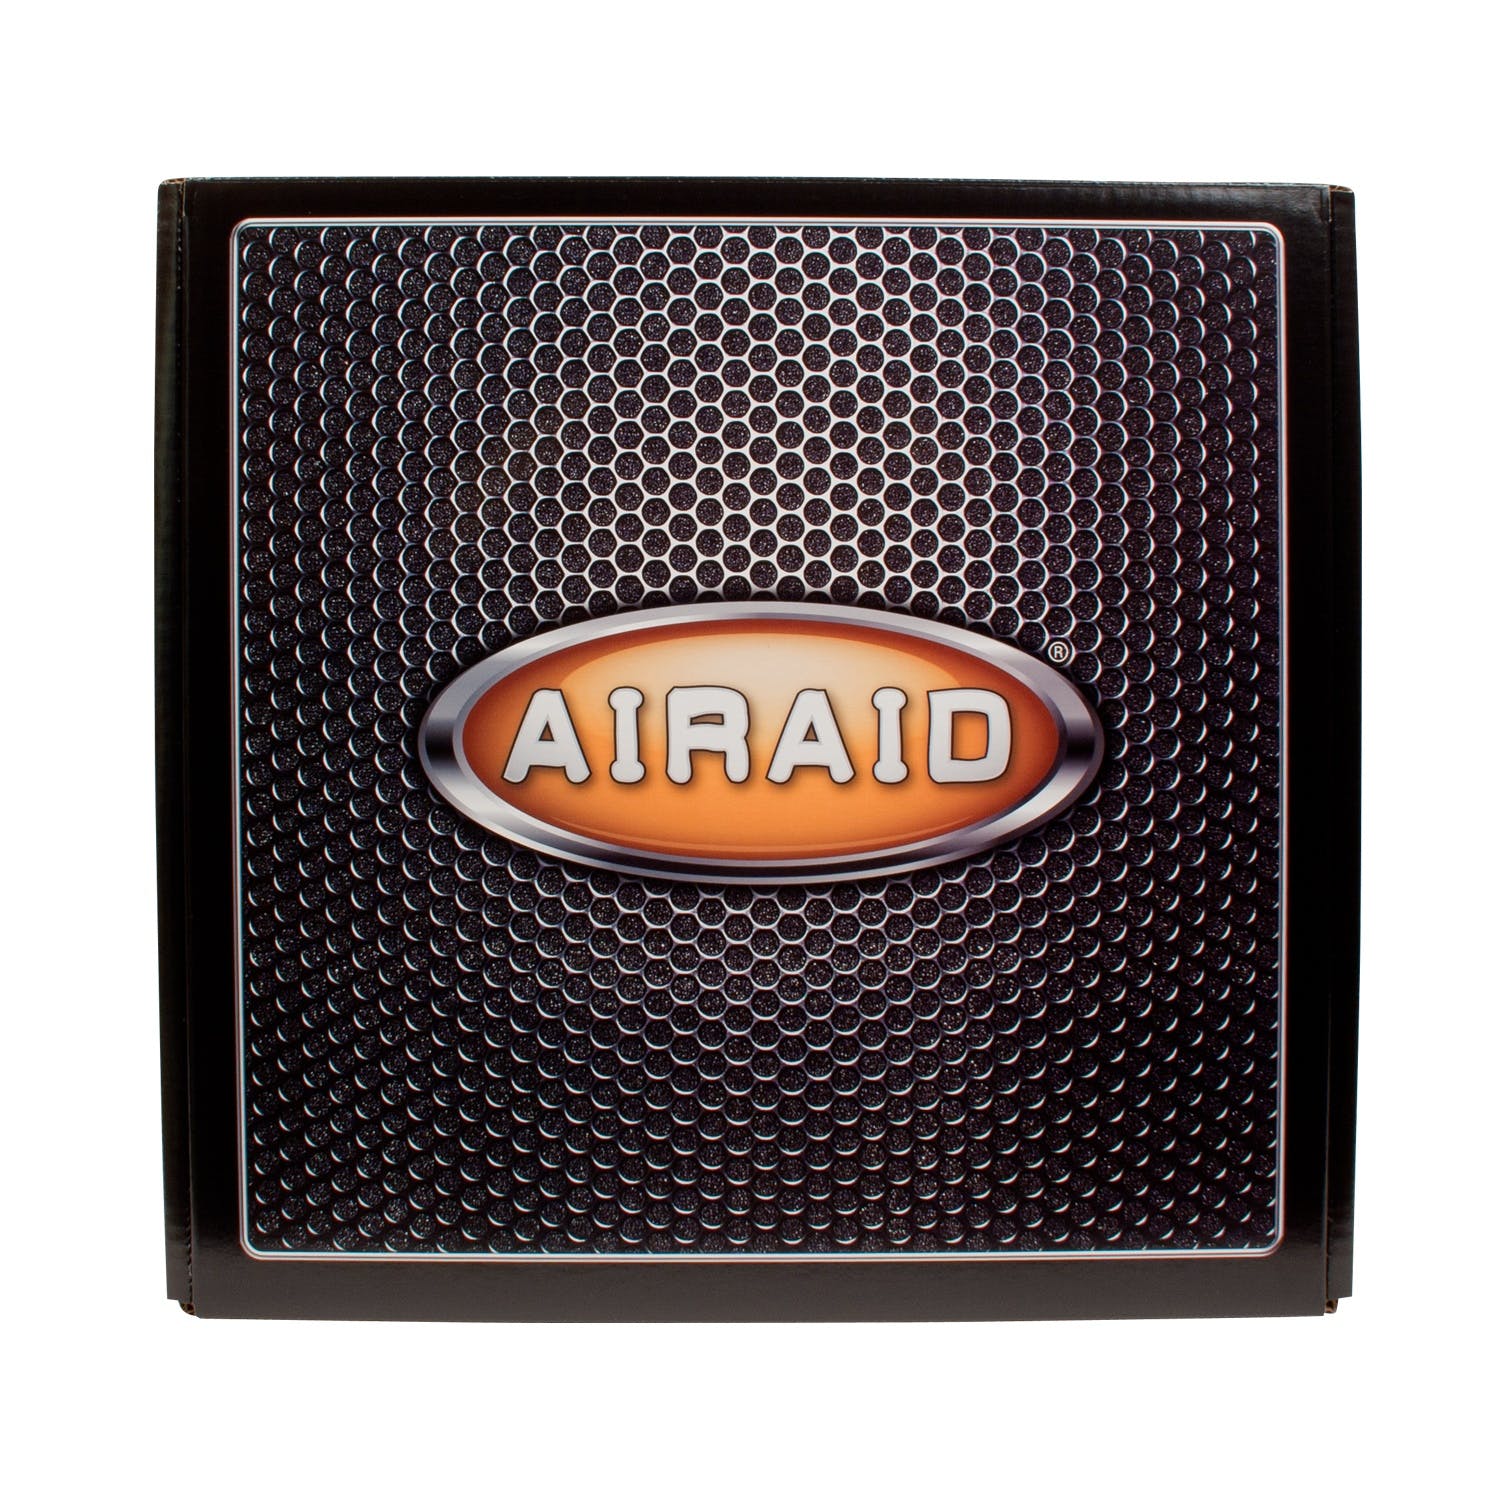 AIRAID 200-196 Performance Air Intake System